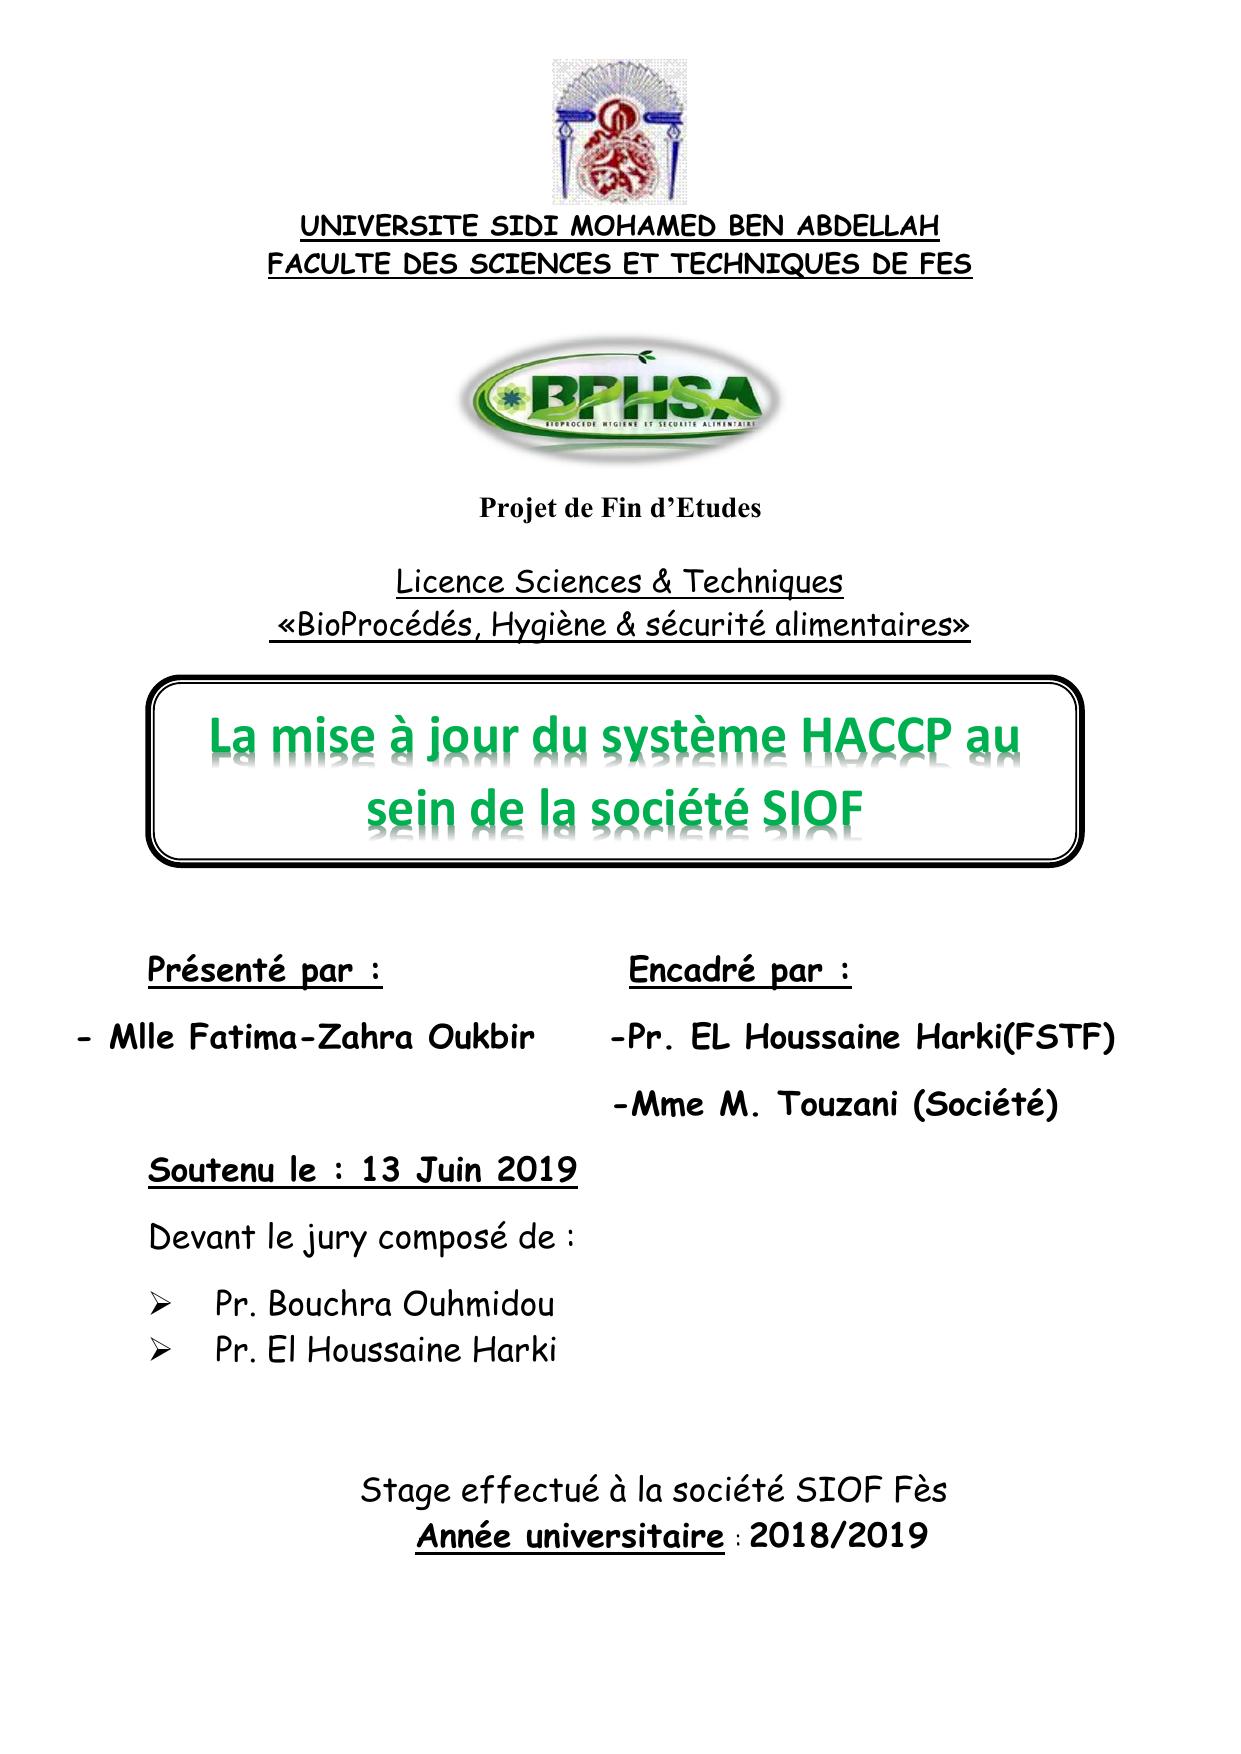 La mise à jour du système HACCP au sein de la société SIOF